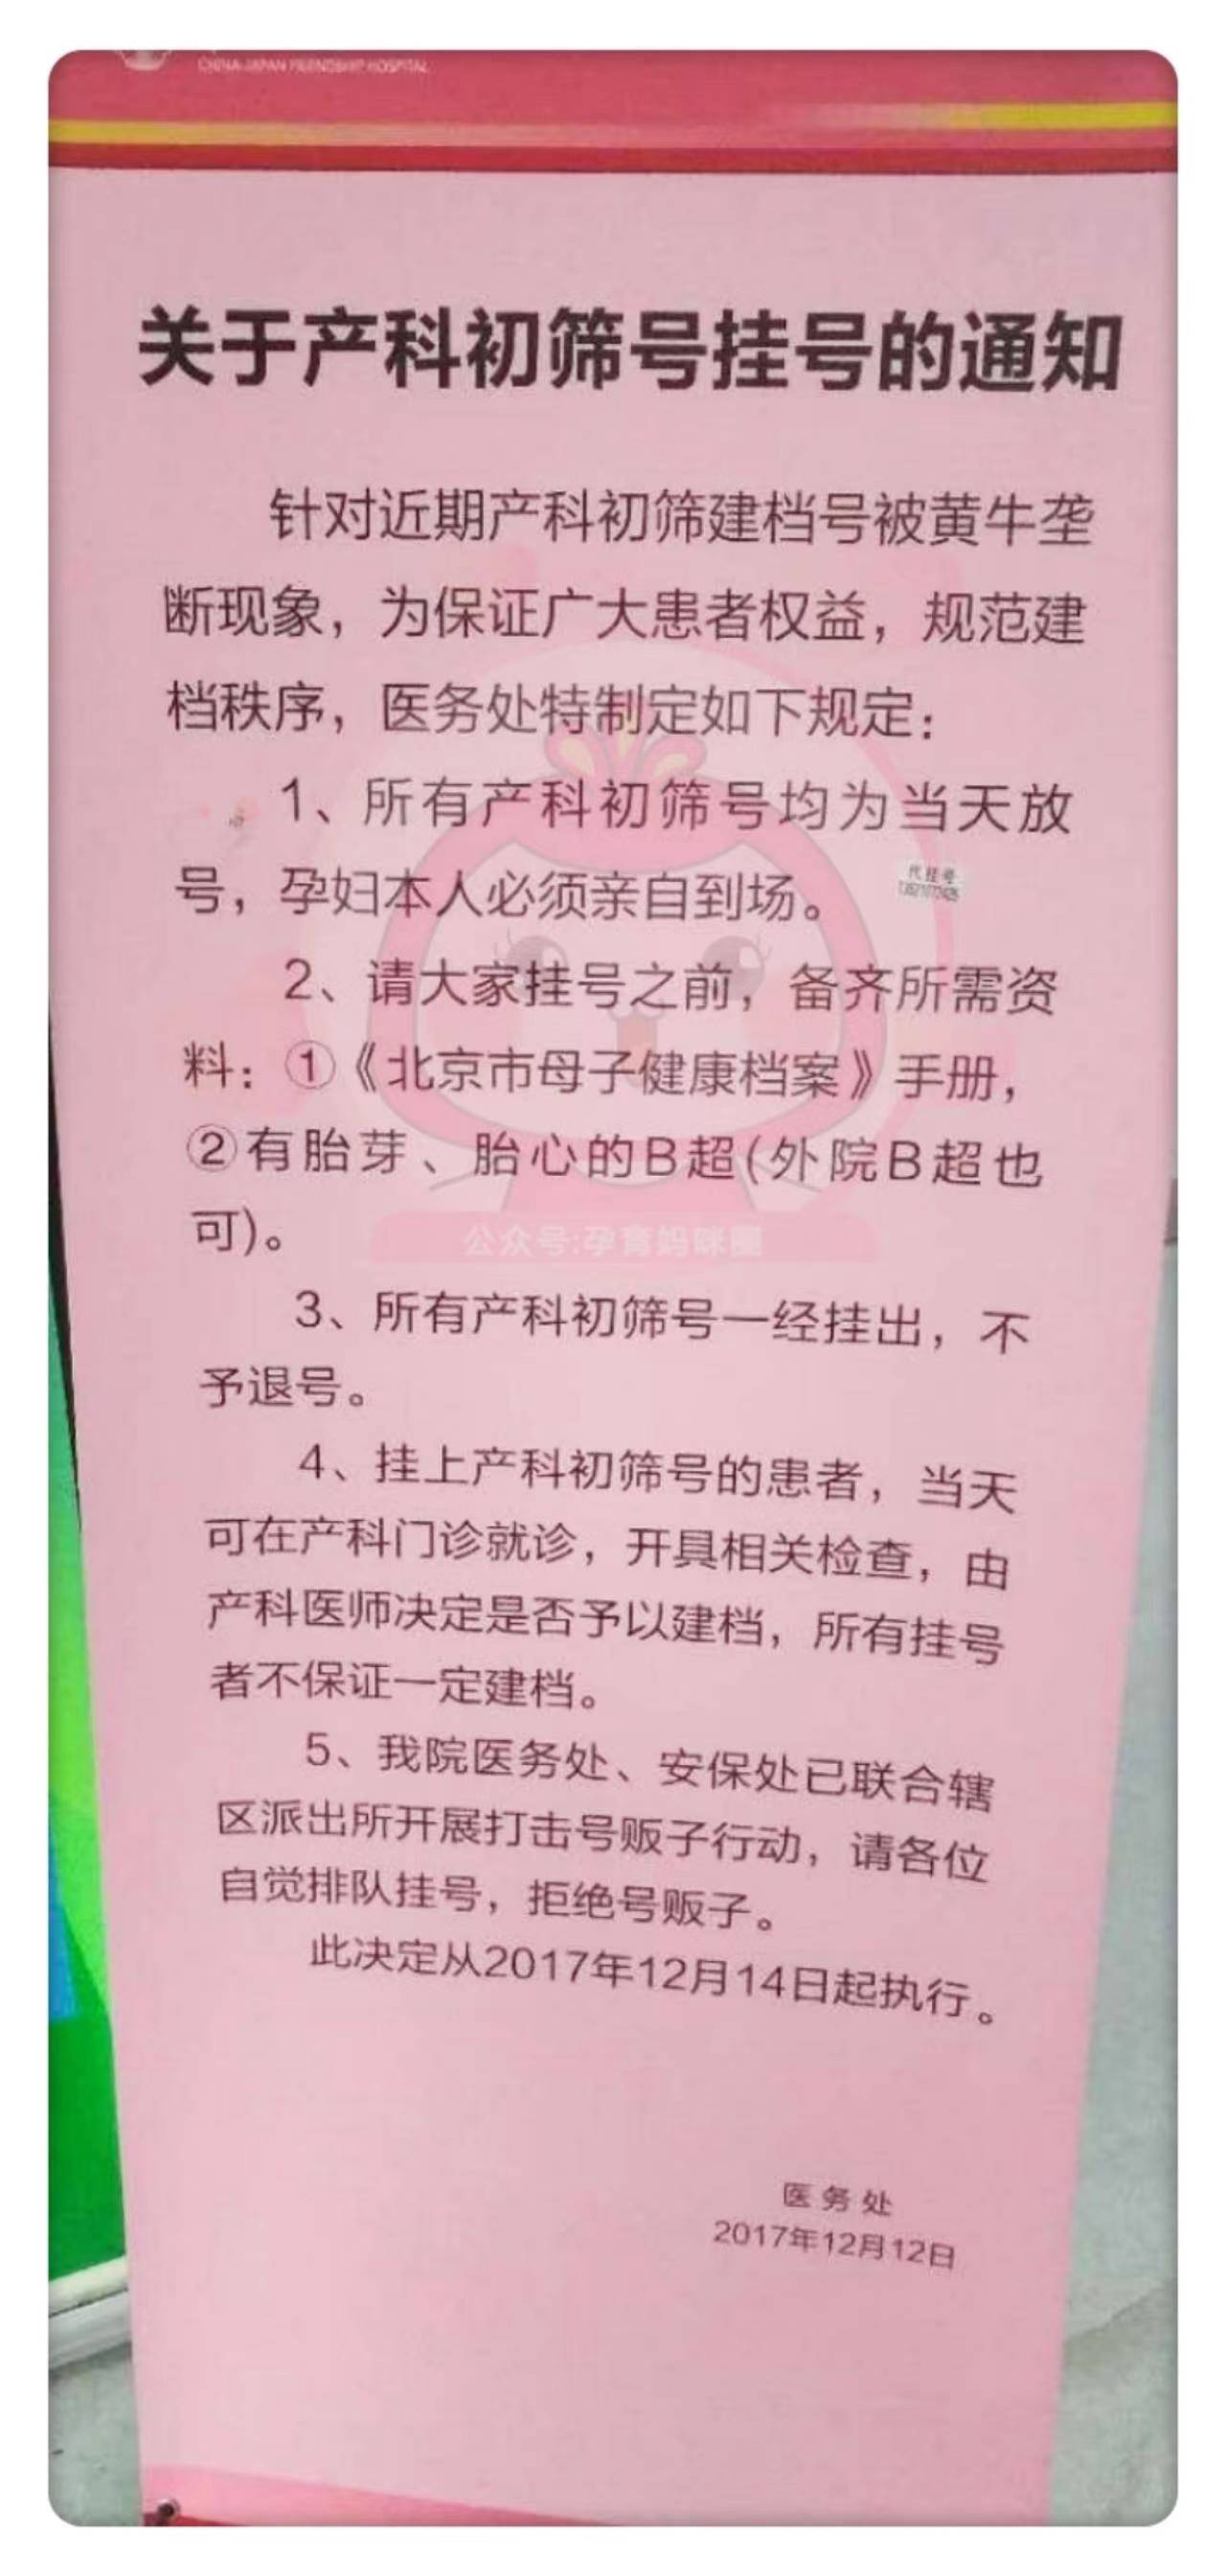 包含北京妇产医院黄牛诚信挂号，实测可靠很感激!的词条